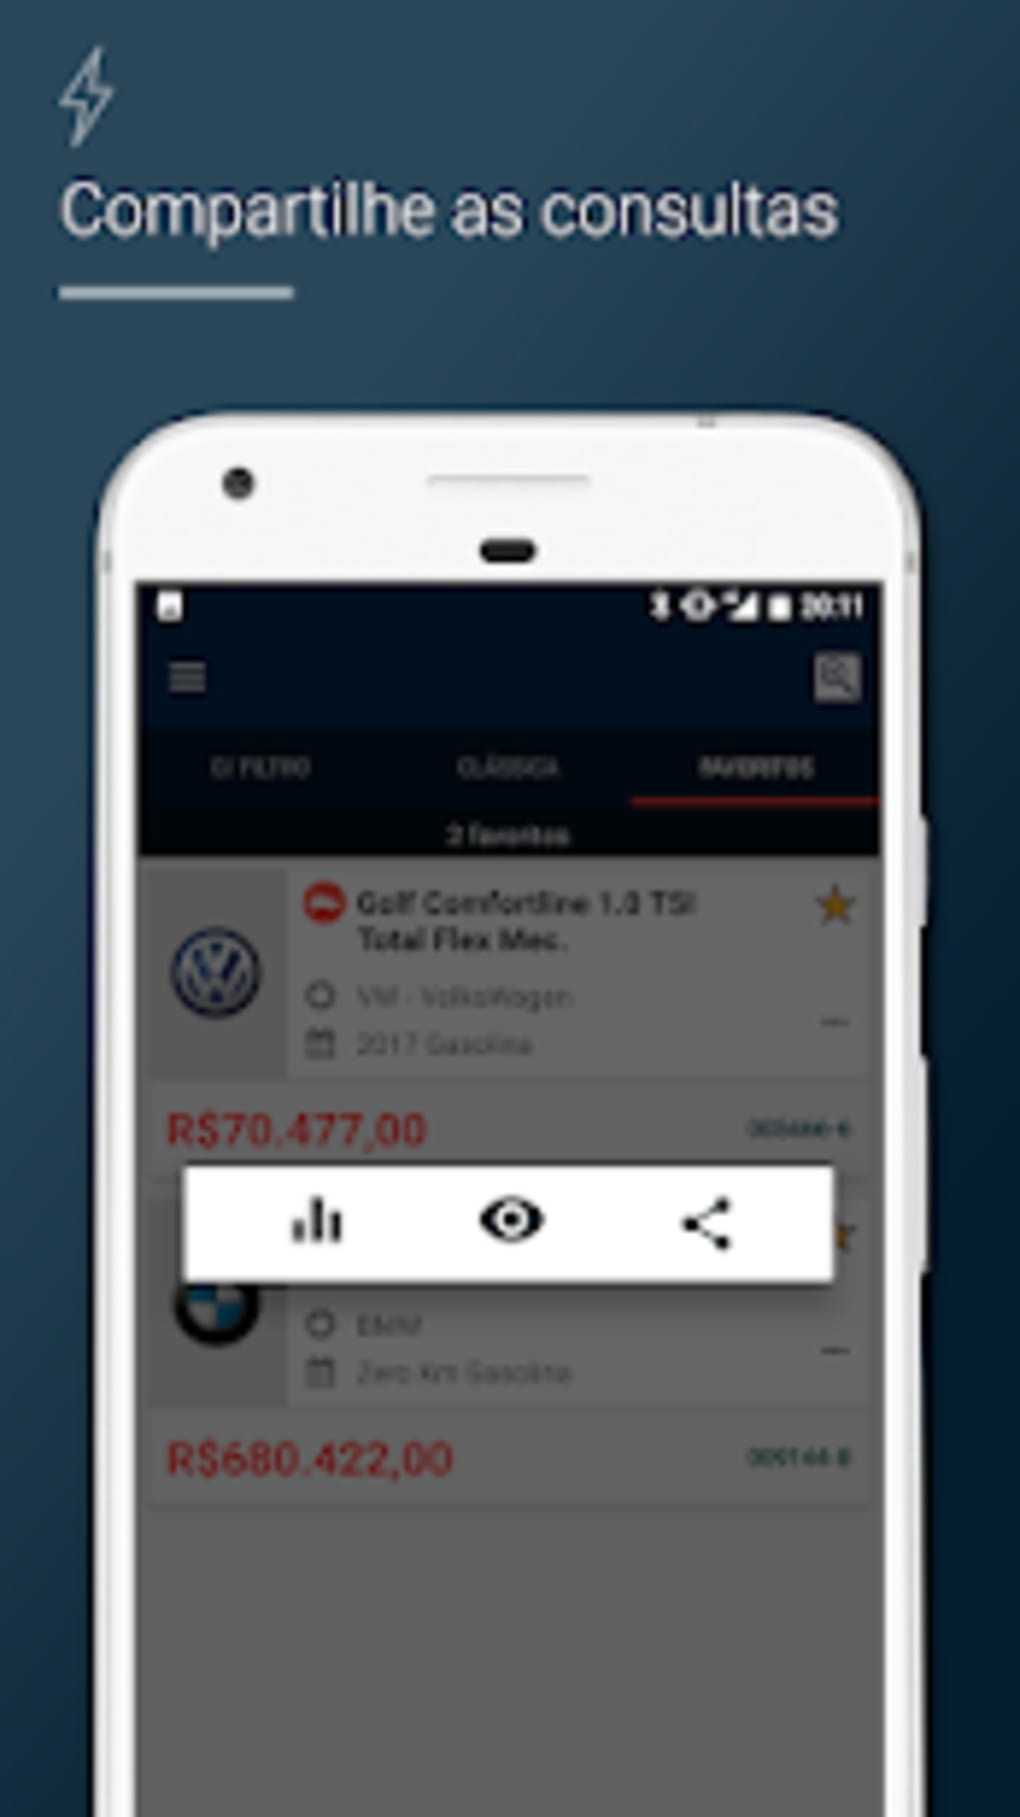 Consulta FIPE (Carros e Motos) – Apps on Google Play